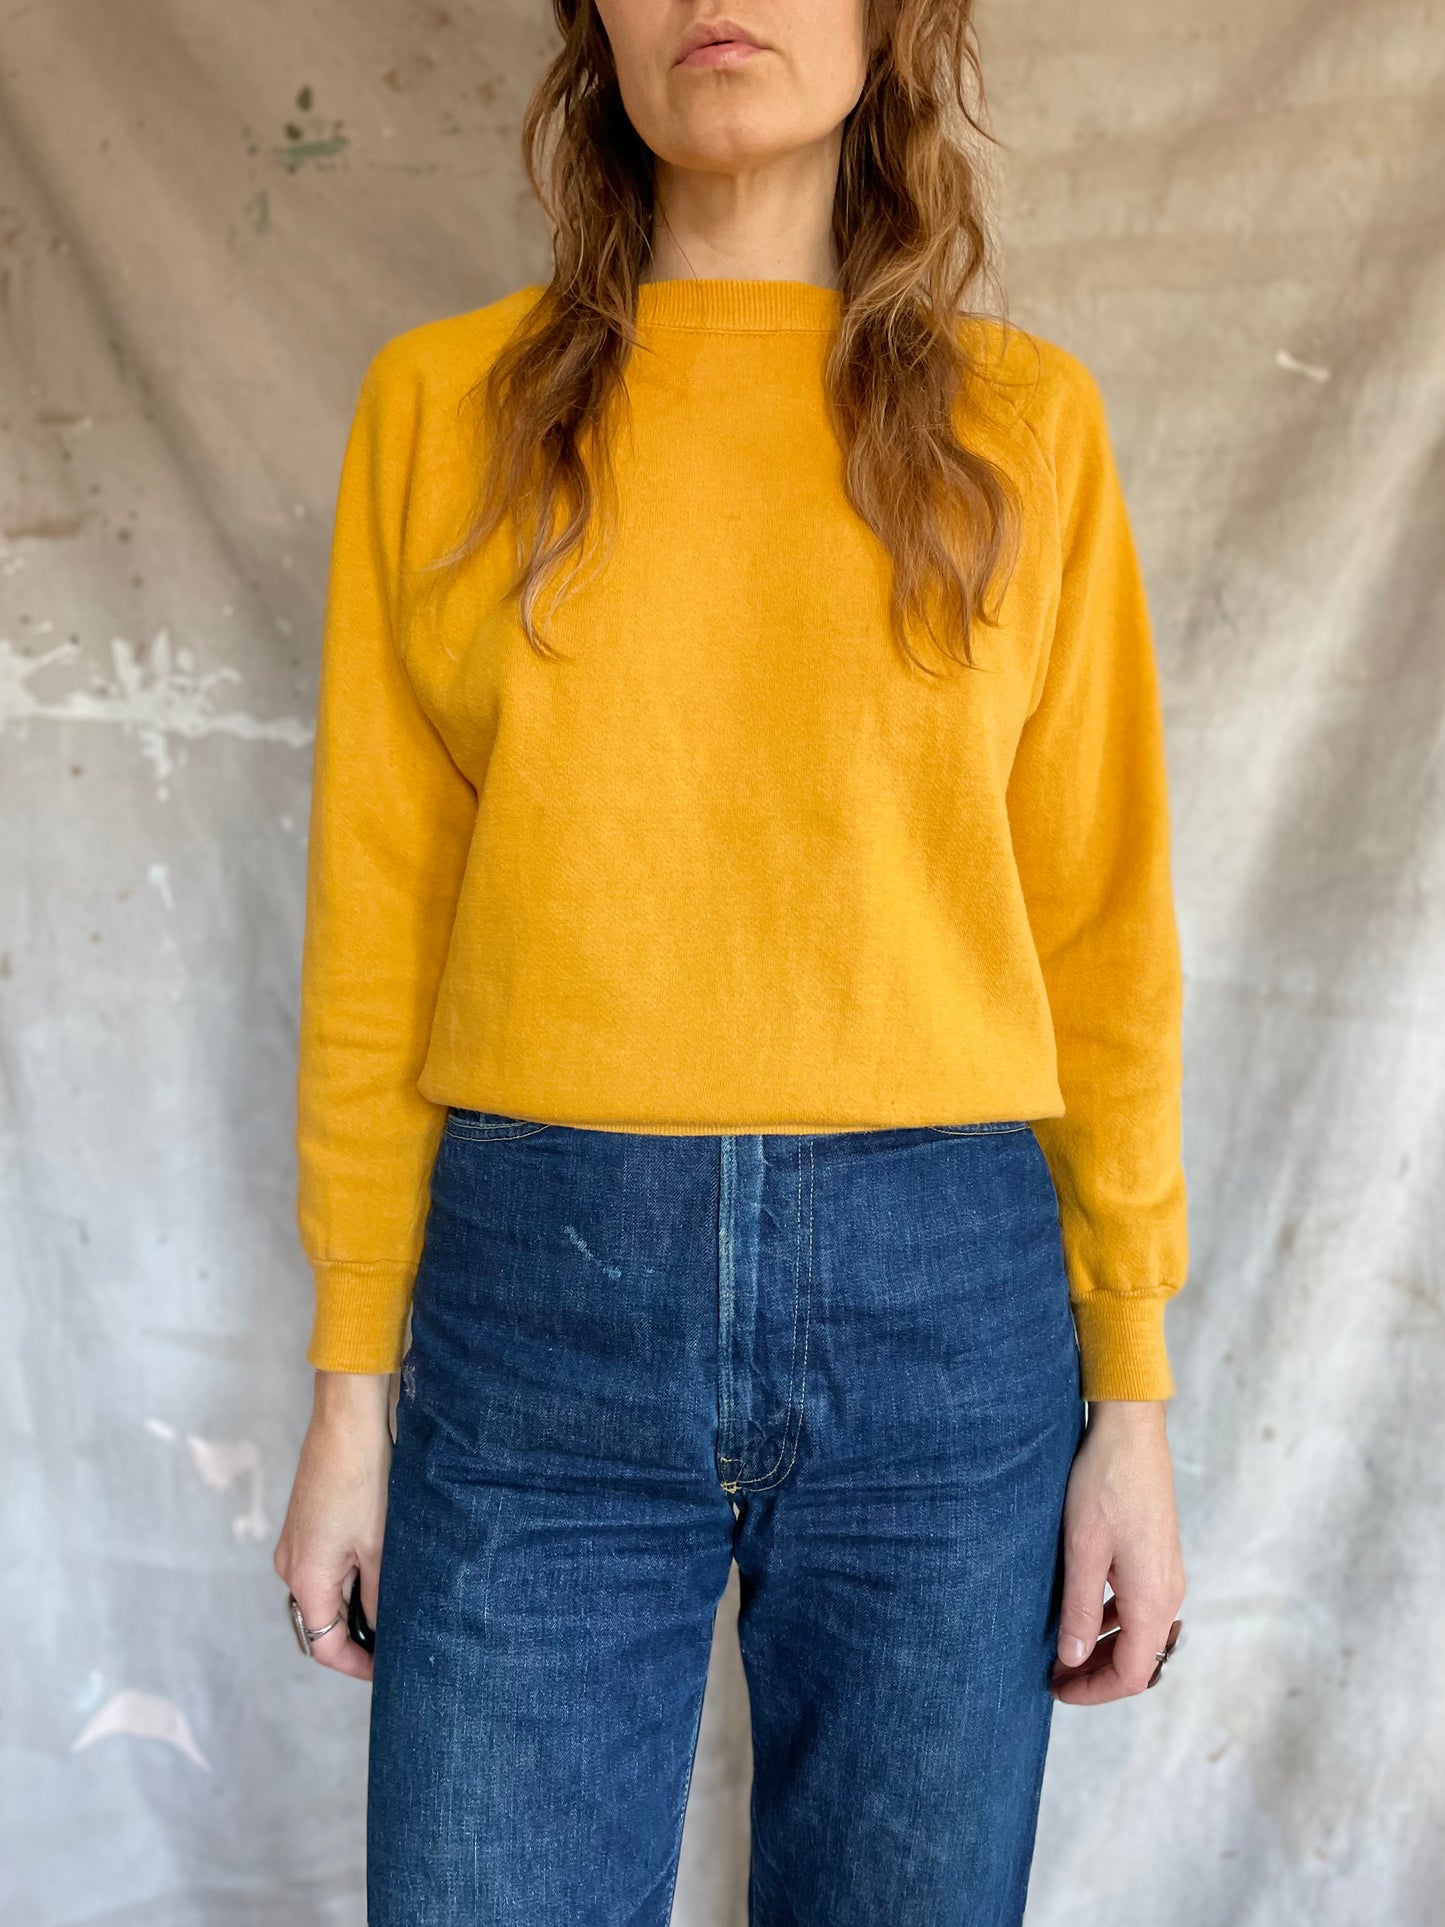 70s Blank Golden Sweatshirt